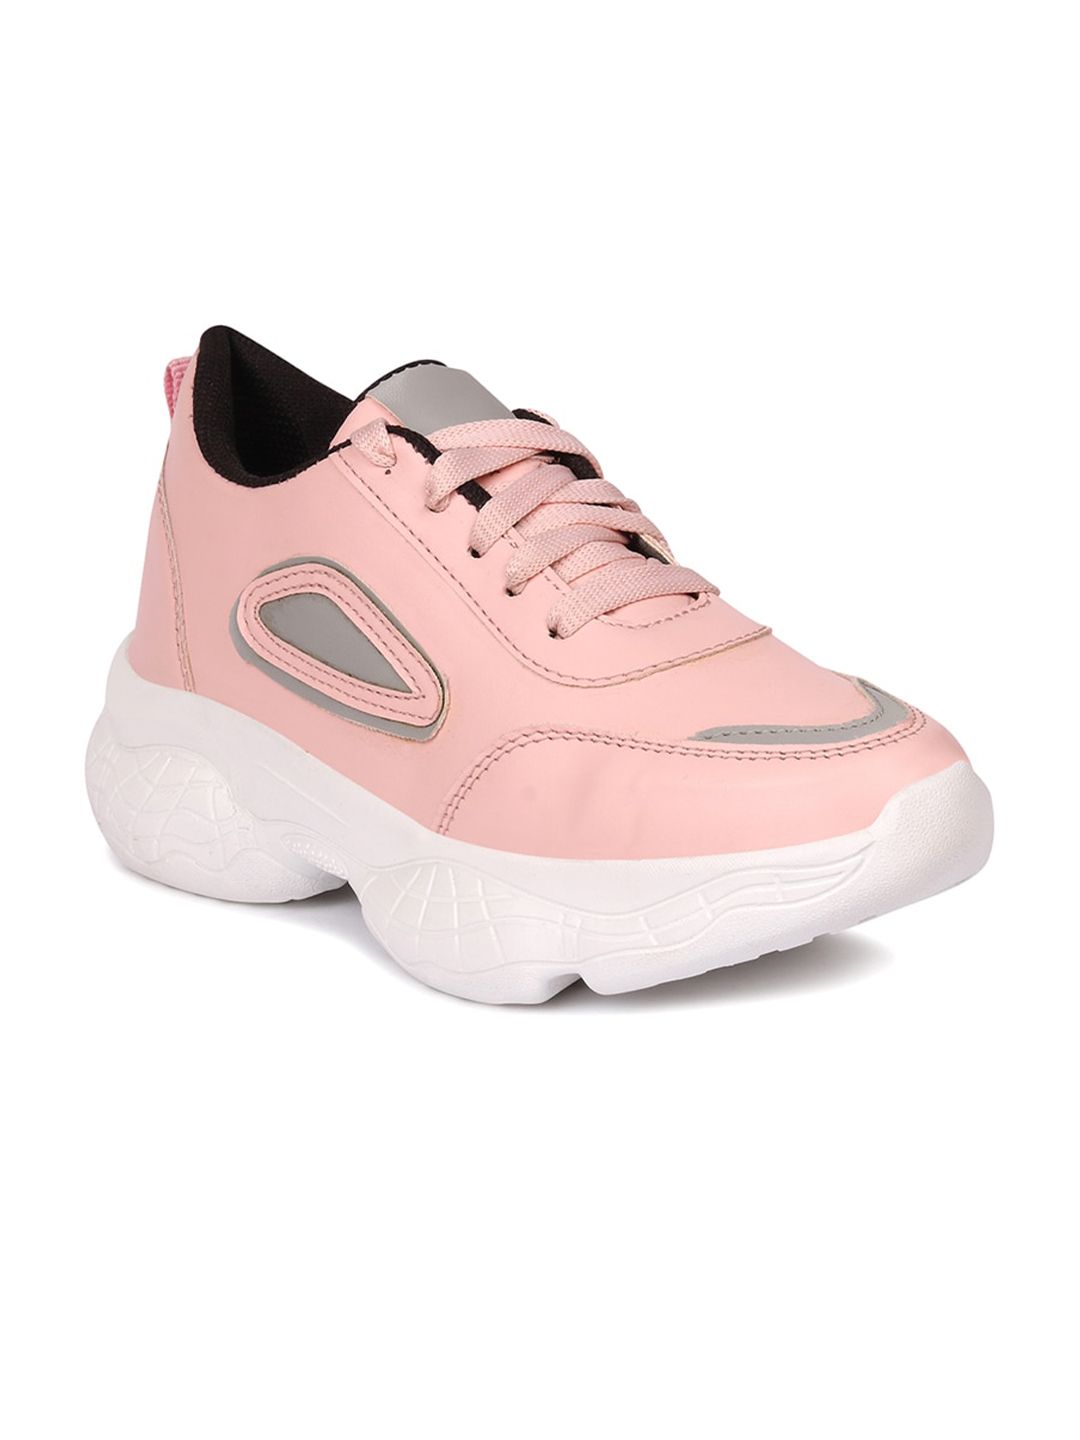 Longwalk Women Pink Walking Non-Marking Shoes Price in India